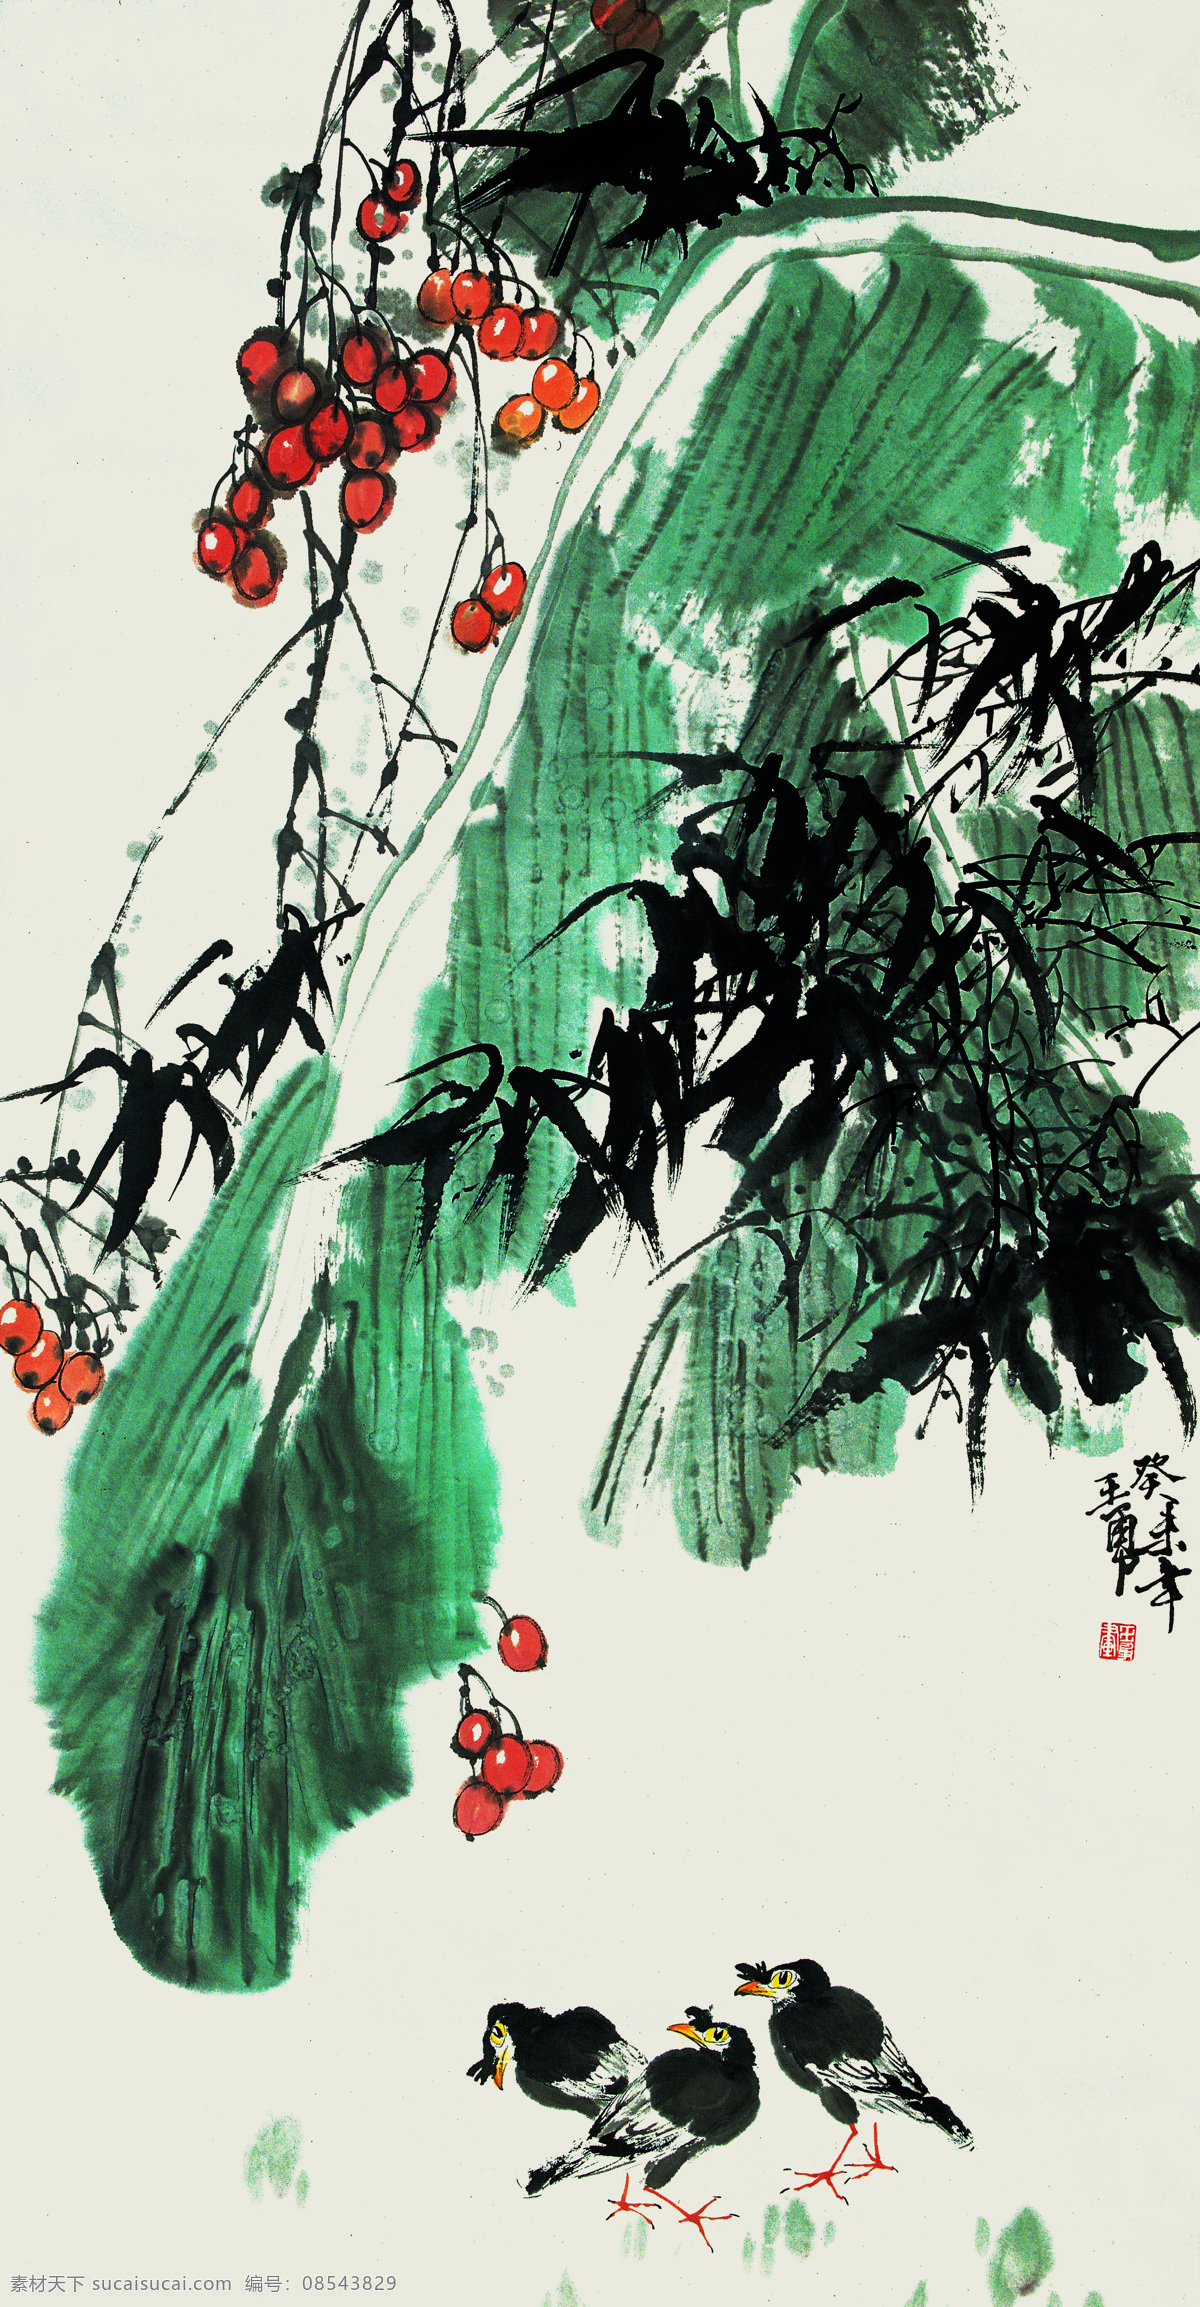 小鸟 水果 水墨画 动物 名画 中国画 国画 装饰画 中堂画 壁画 绘画艺术 书画文字 文化艺术